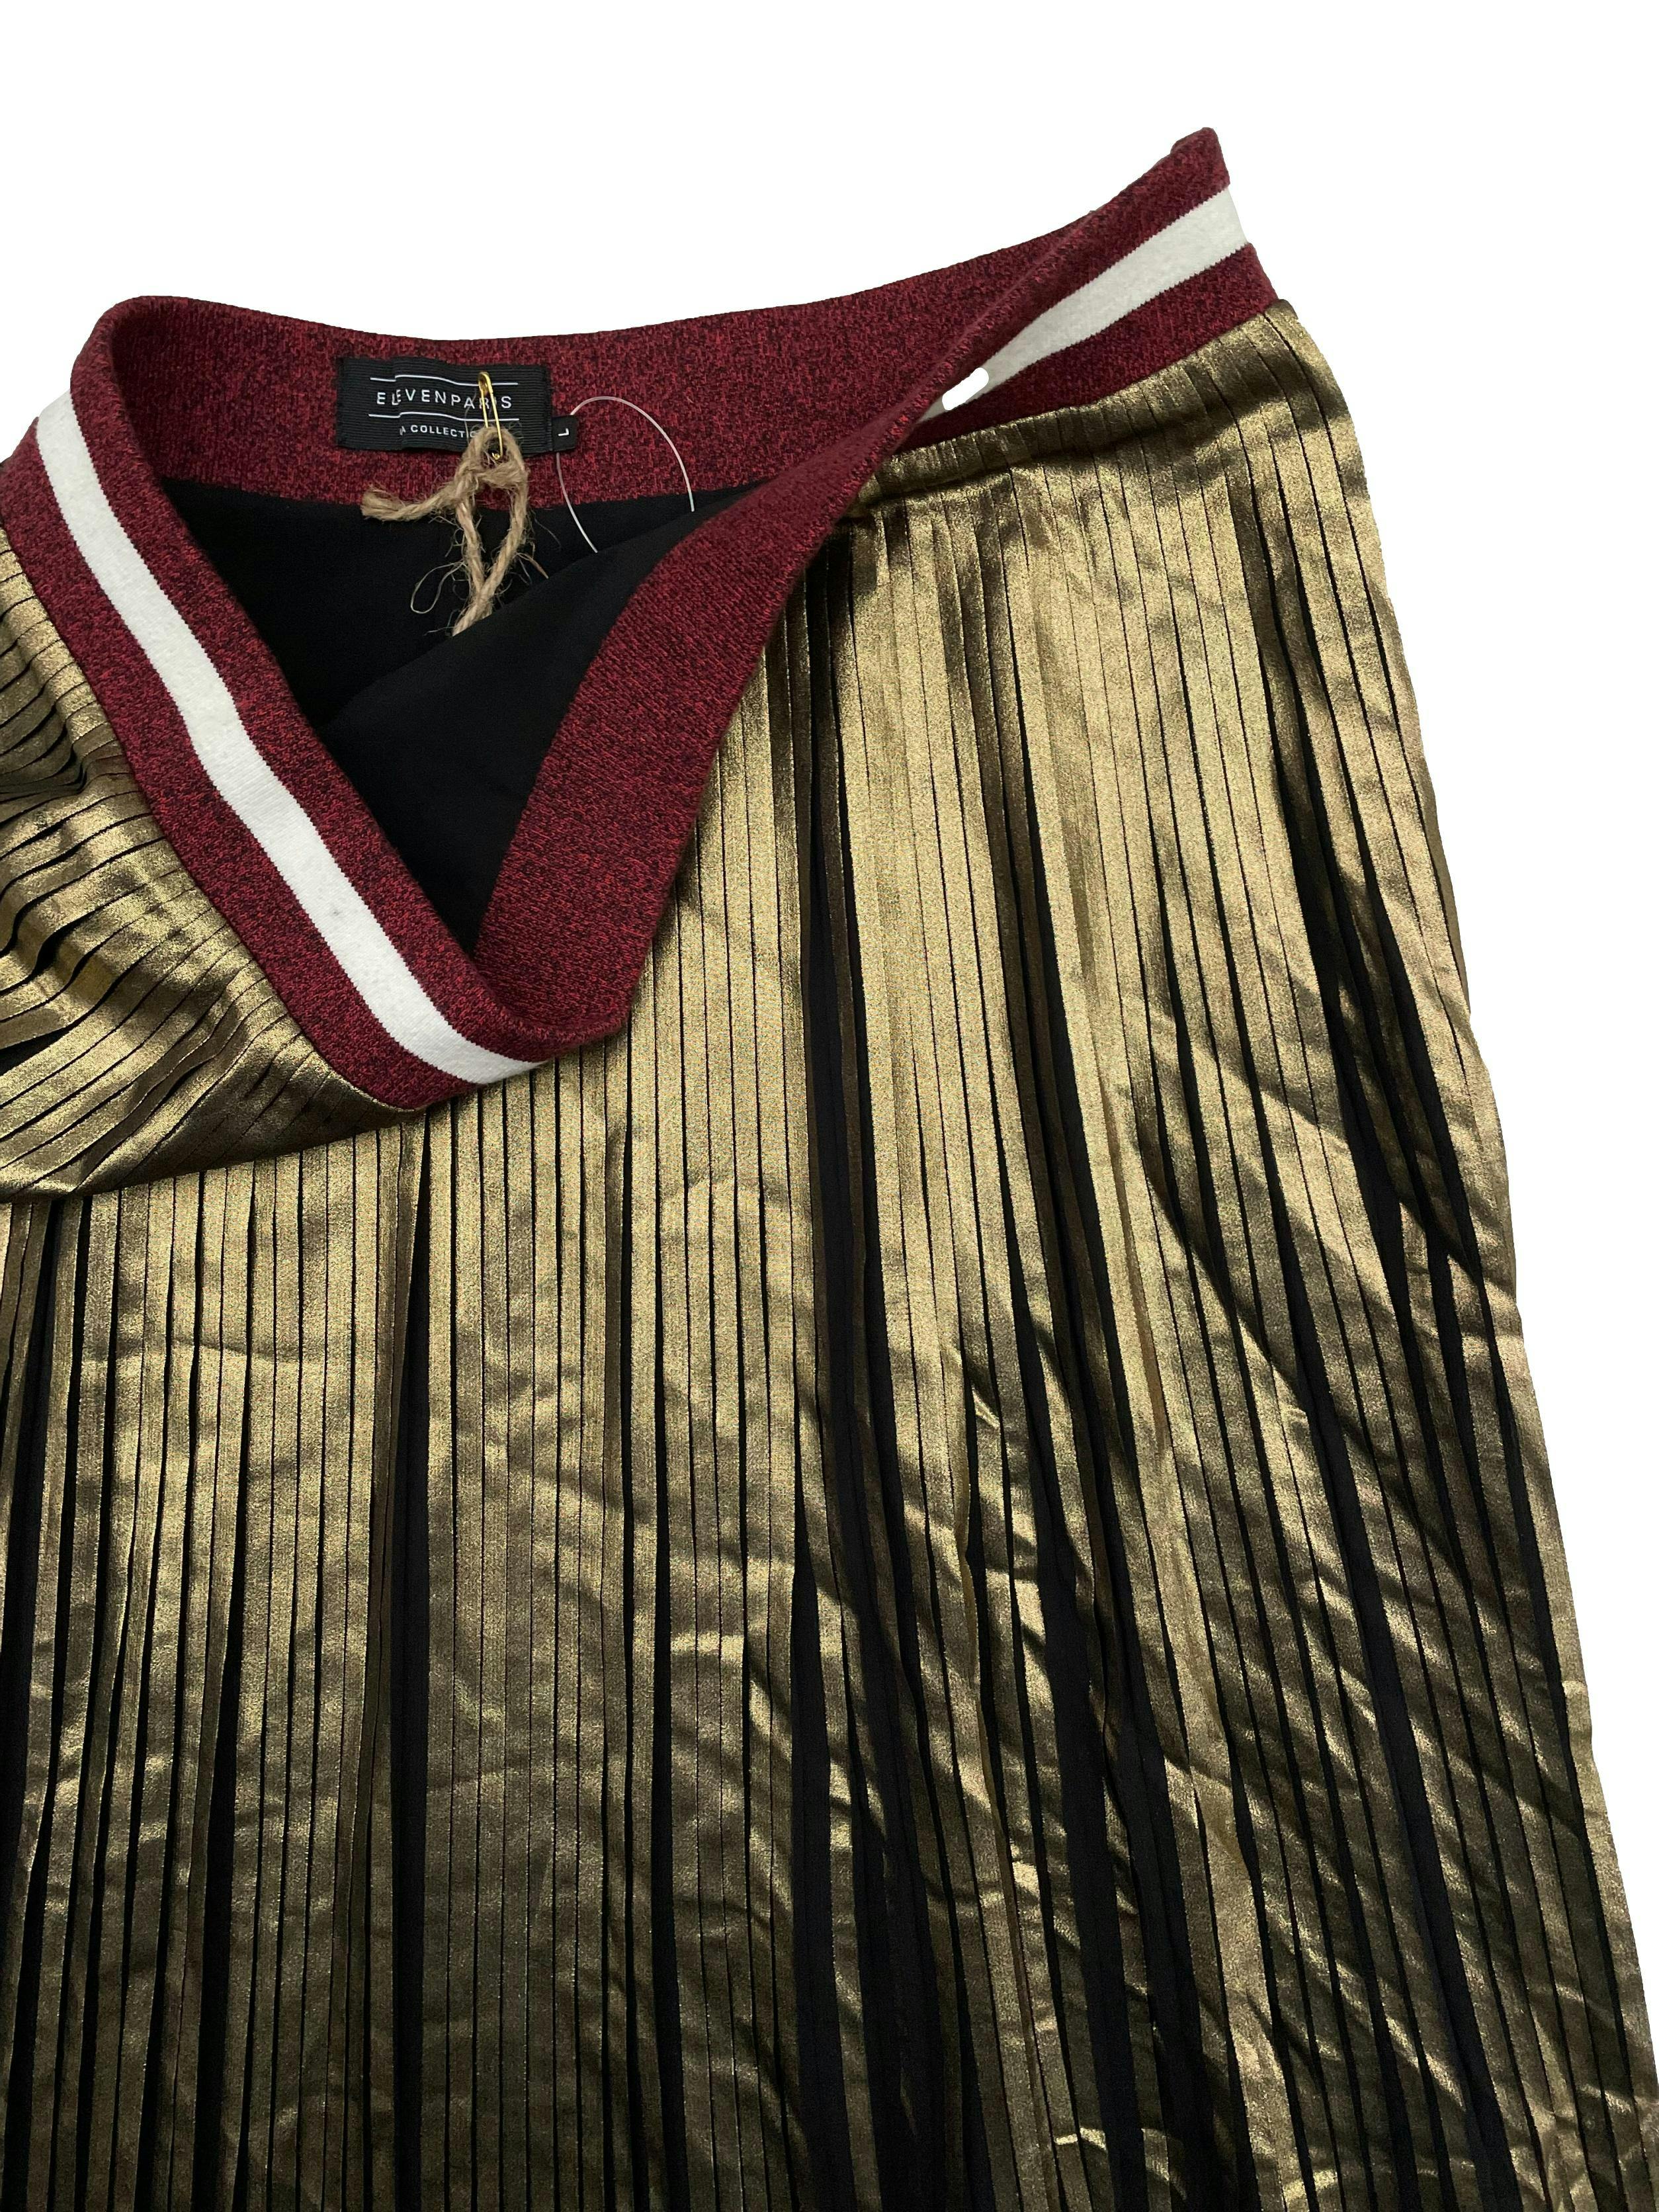 Falda midi Eleven Paris, dorada plisada, forrada, con pretina jersey y cierre lateral. Cintura 80cm Largo 77cm.